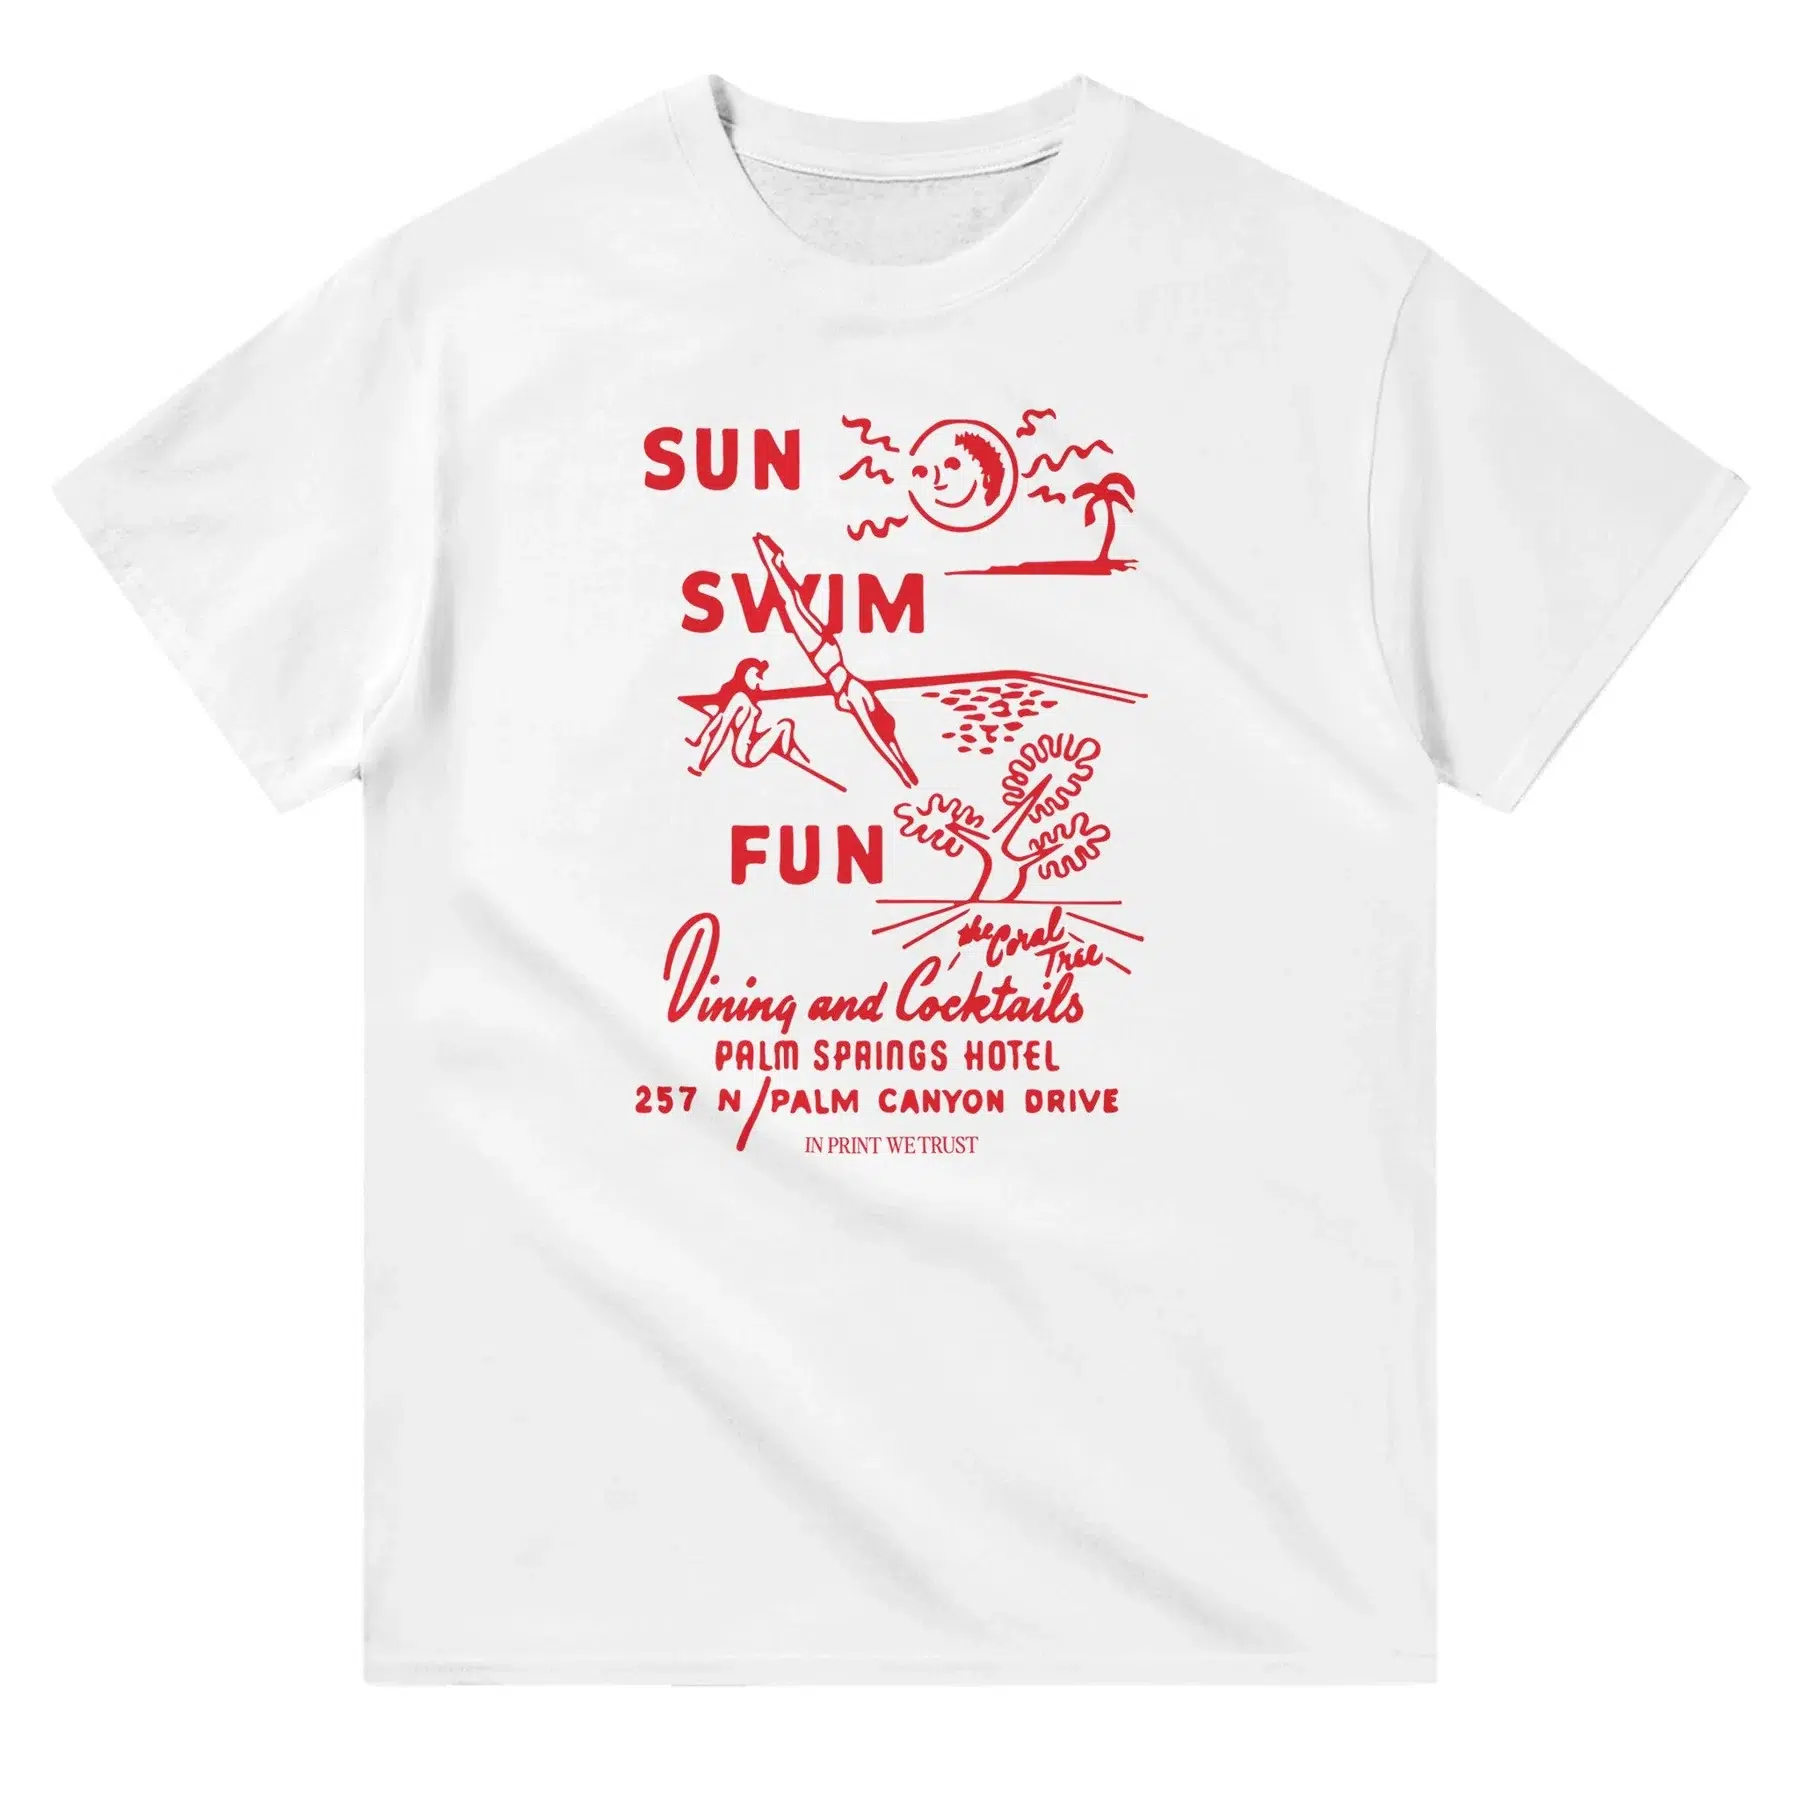 Sun, swim, fun